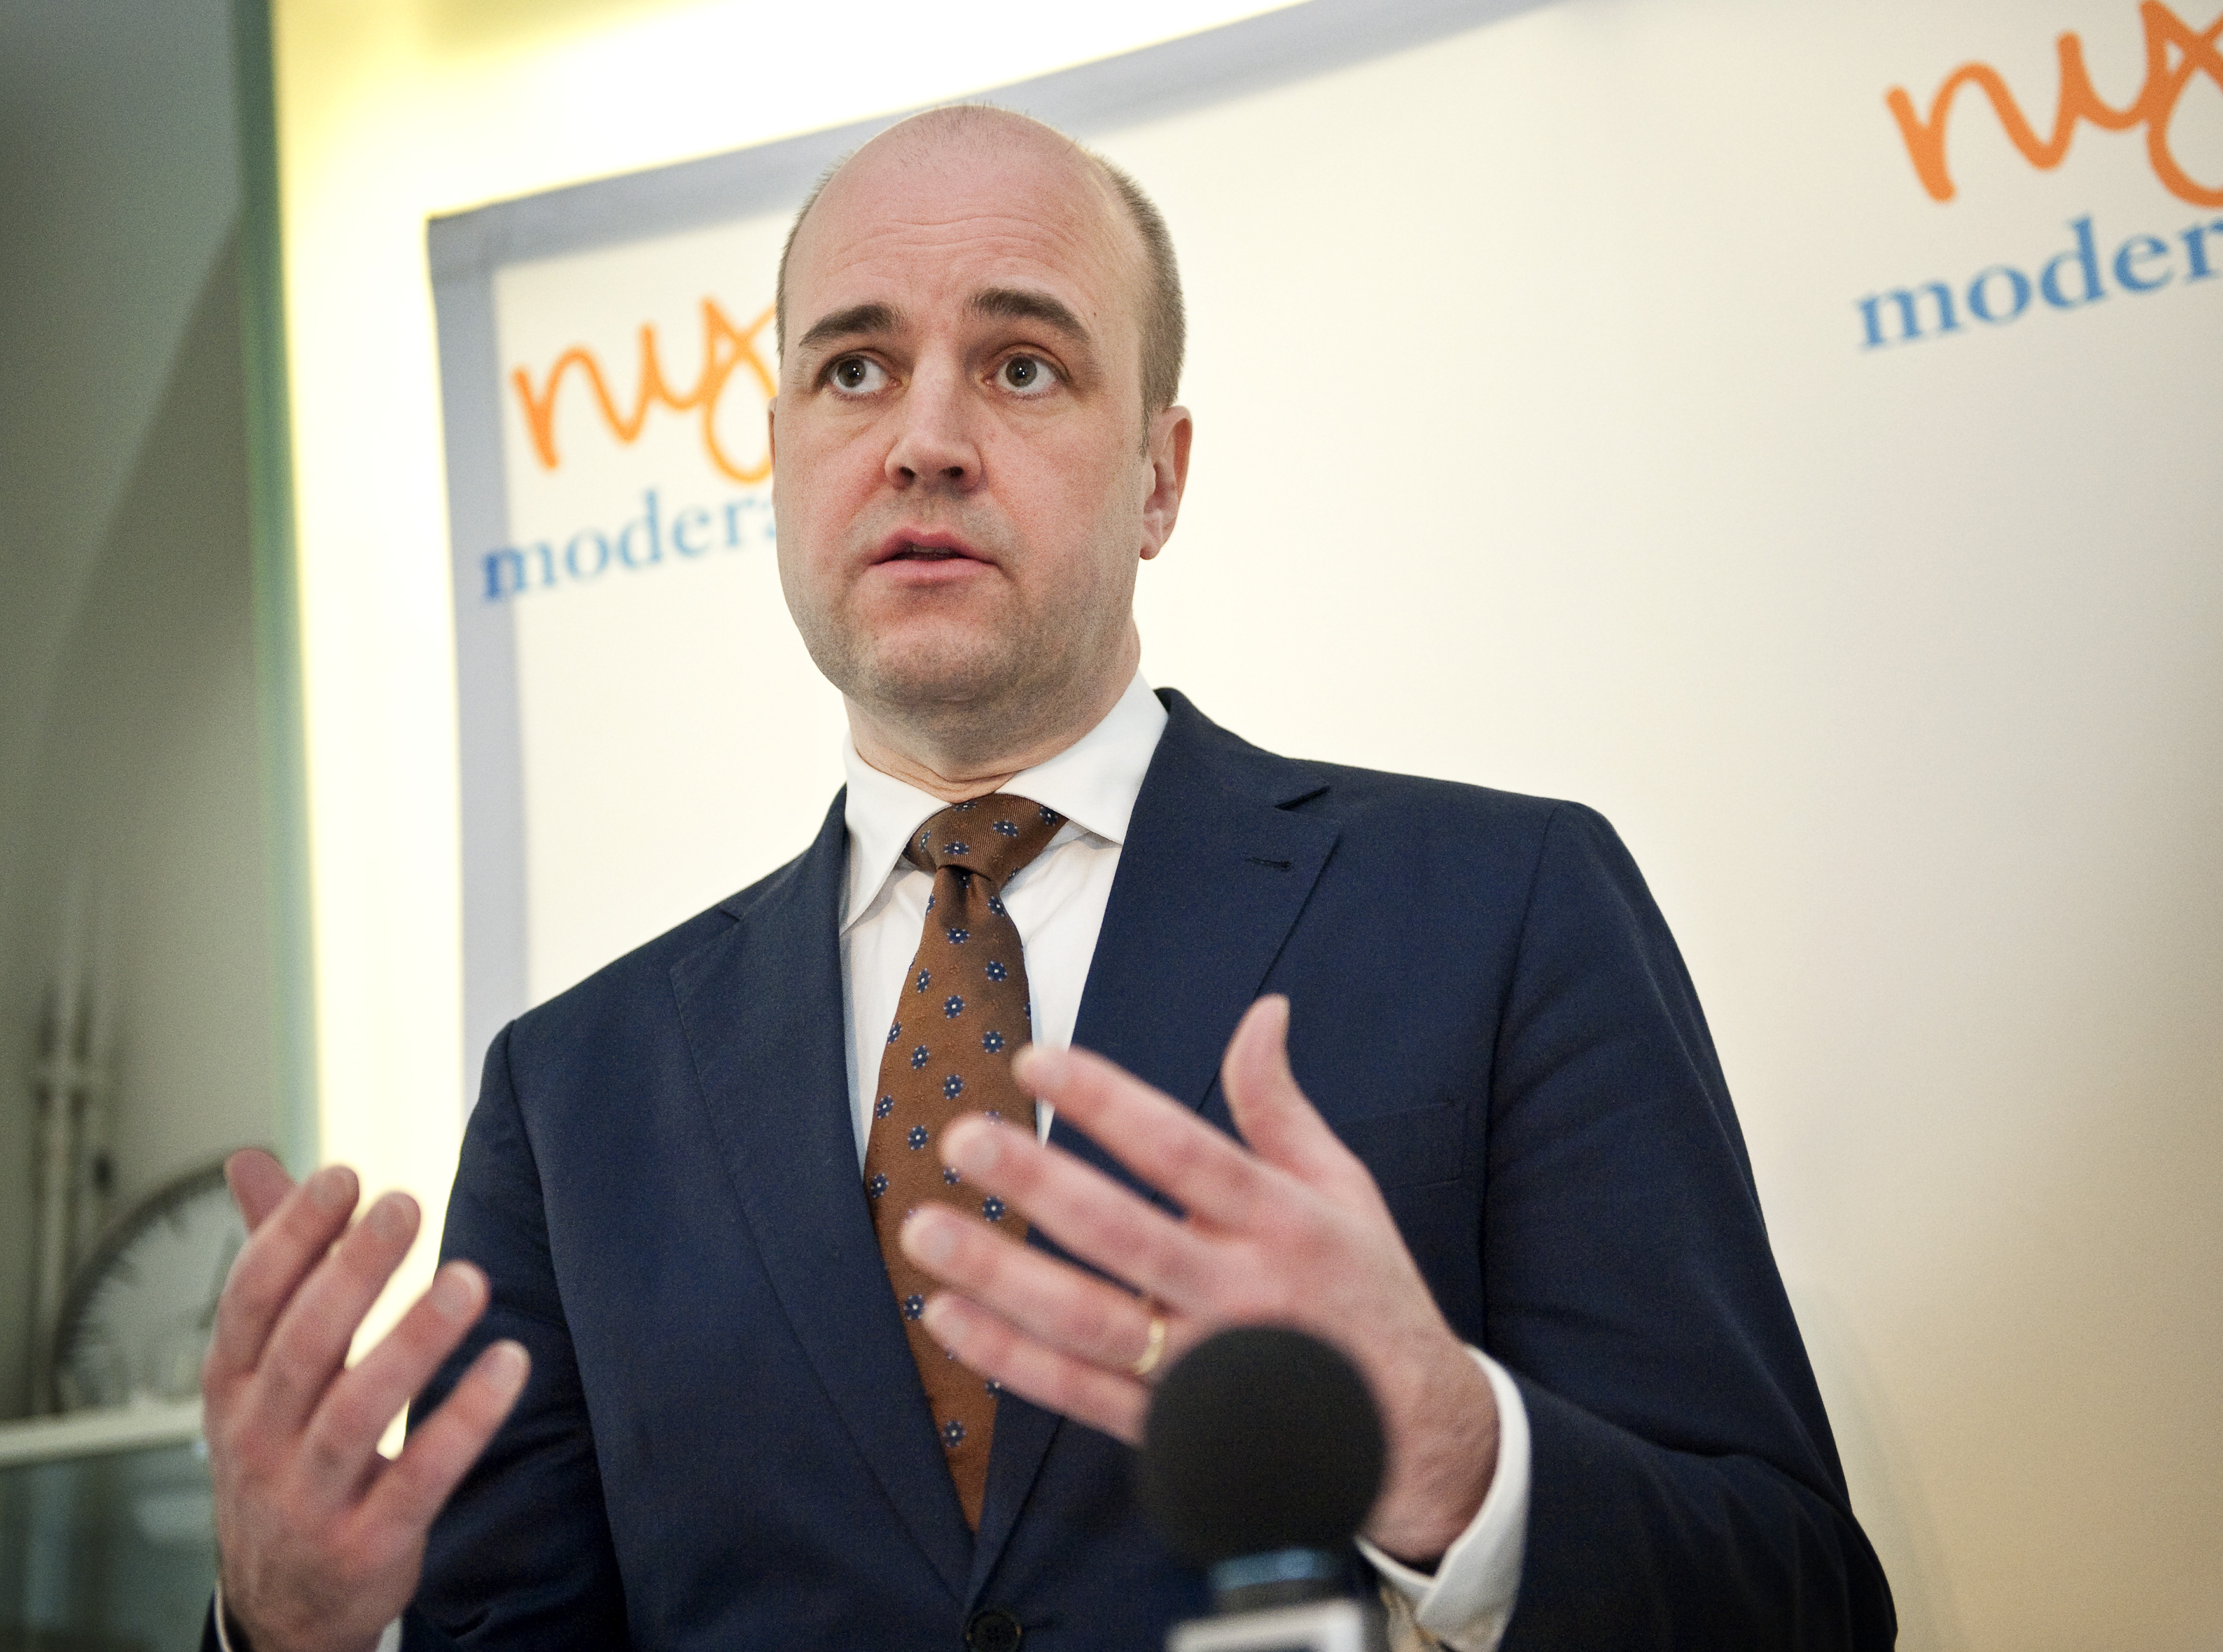 Riksdagsvalet 2010, Jämställdhet, Kvotering, Pappaledighet, Föräldraförsäkringen, Fredrik Reinfeldt